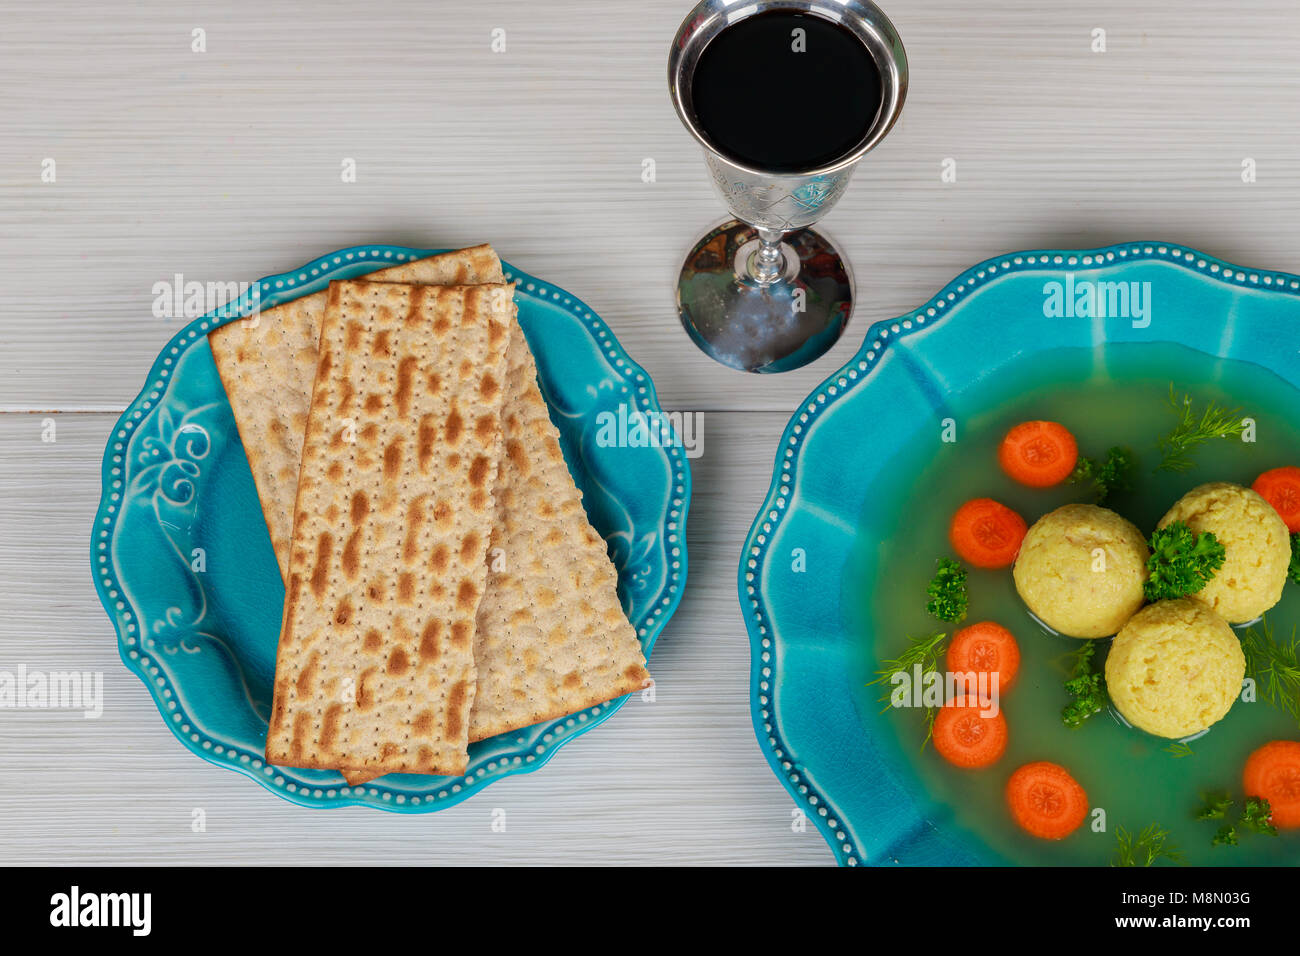 La pâque juive traditionnelle matzah plat servi avec soupe à la matsa, symboles pour la Pâque juive Pessah holiday Banque D'Images